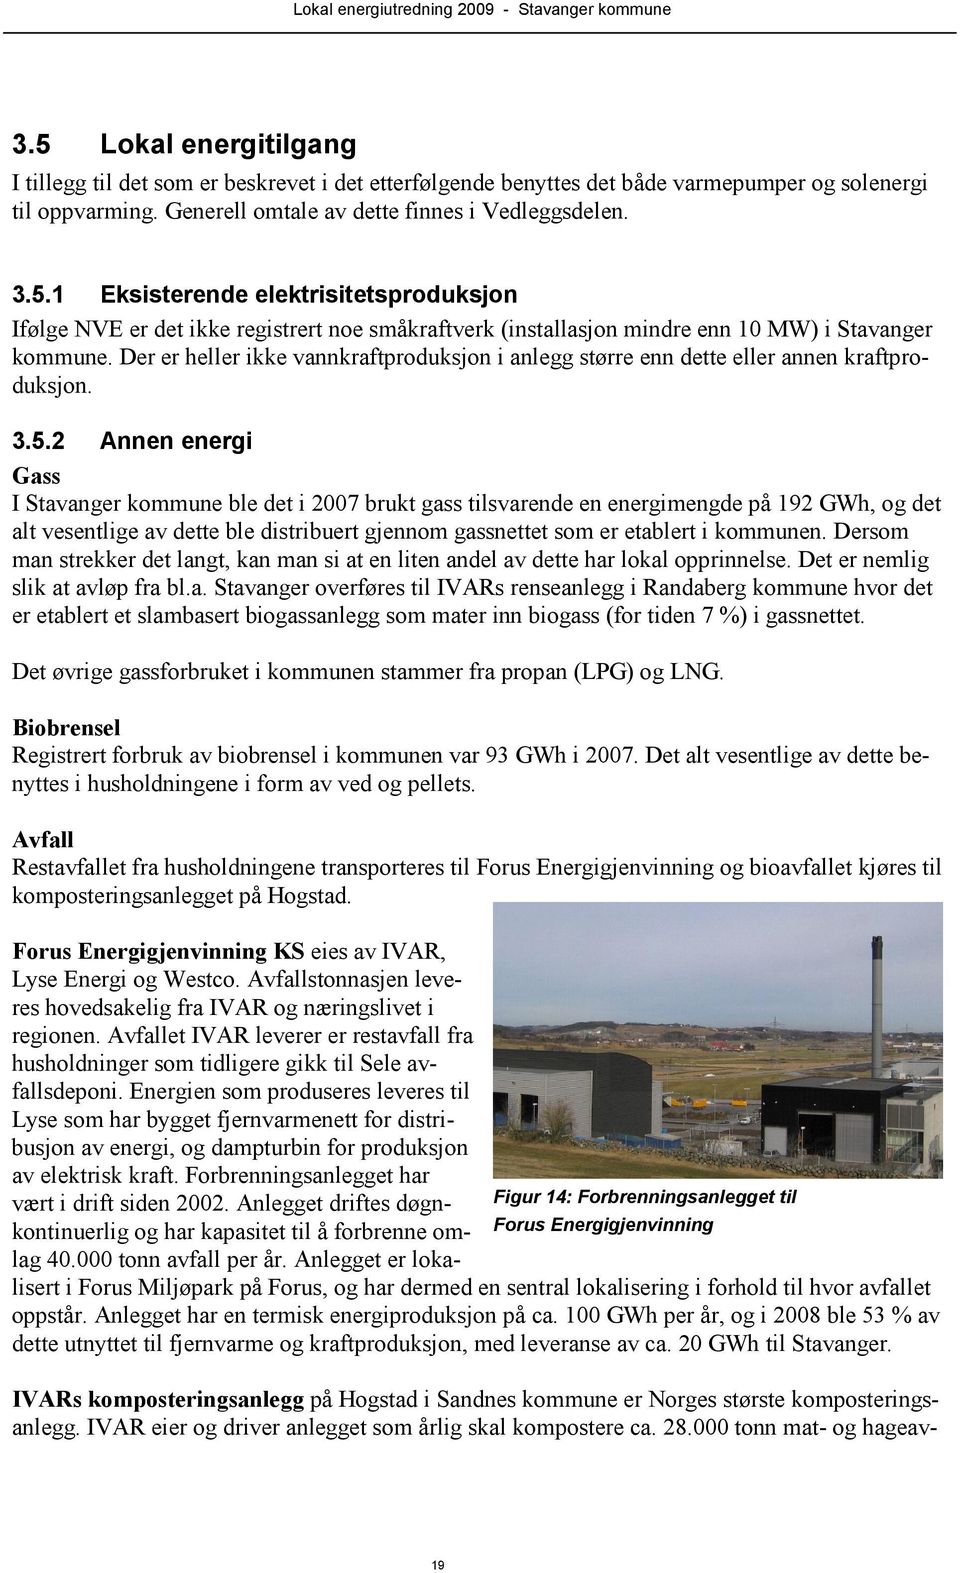 2 Annen energi Gass I Stavanger kommune ble det i 2007 brukt gass tilsvarende en energimengde på 192 GWh, og det alt vesentlige av dette ble distribuert gjennom gassnettet som er etablert i kommunen.